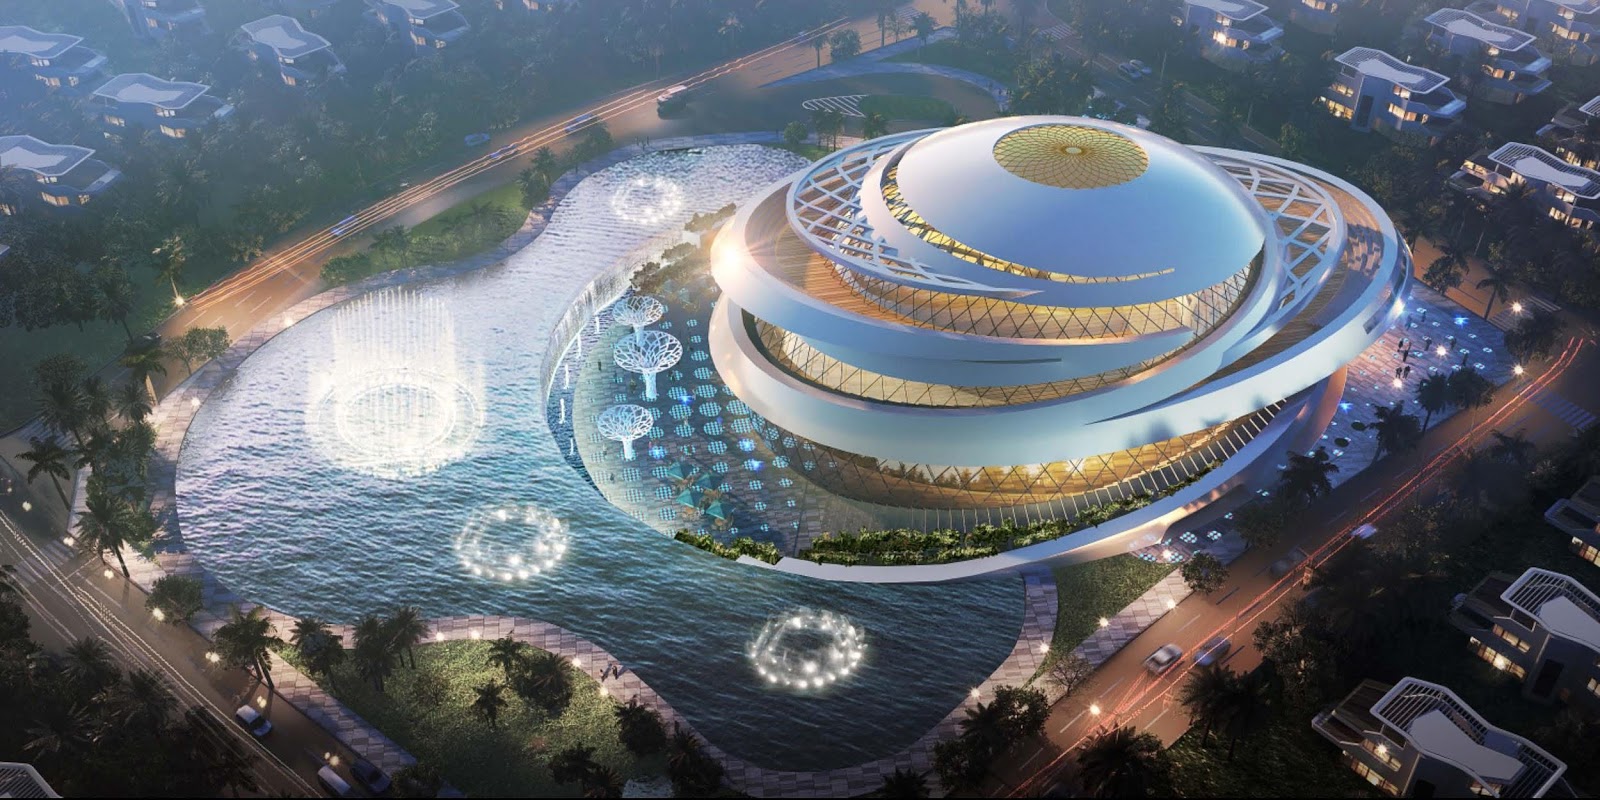 Tiện ích dự án được quy tụ trong những công trình với thiết kế ấn tượng, đầy chất nghệ thuật lần đầu tiên xuất hiện tại Việt Nam.